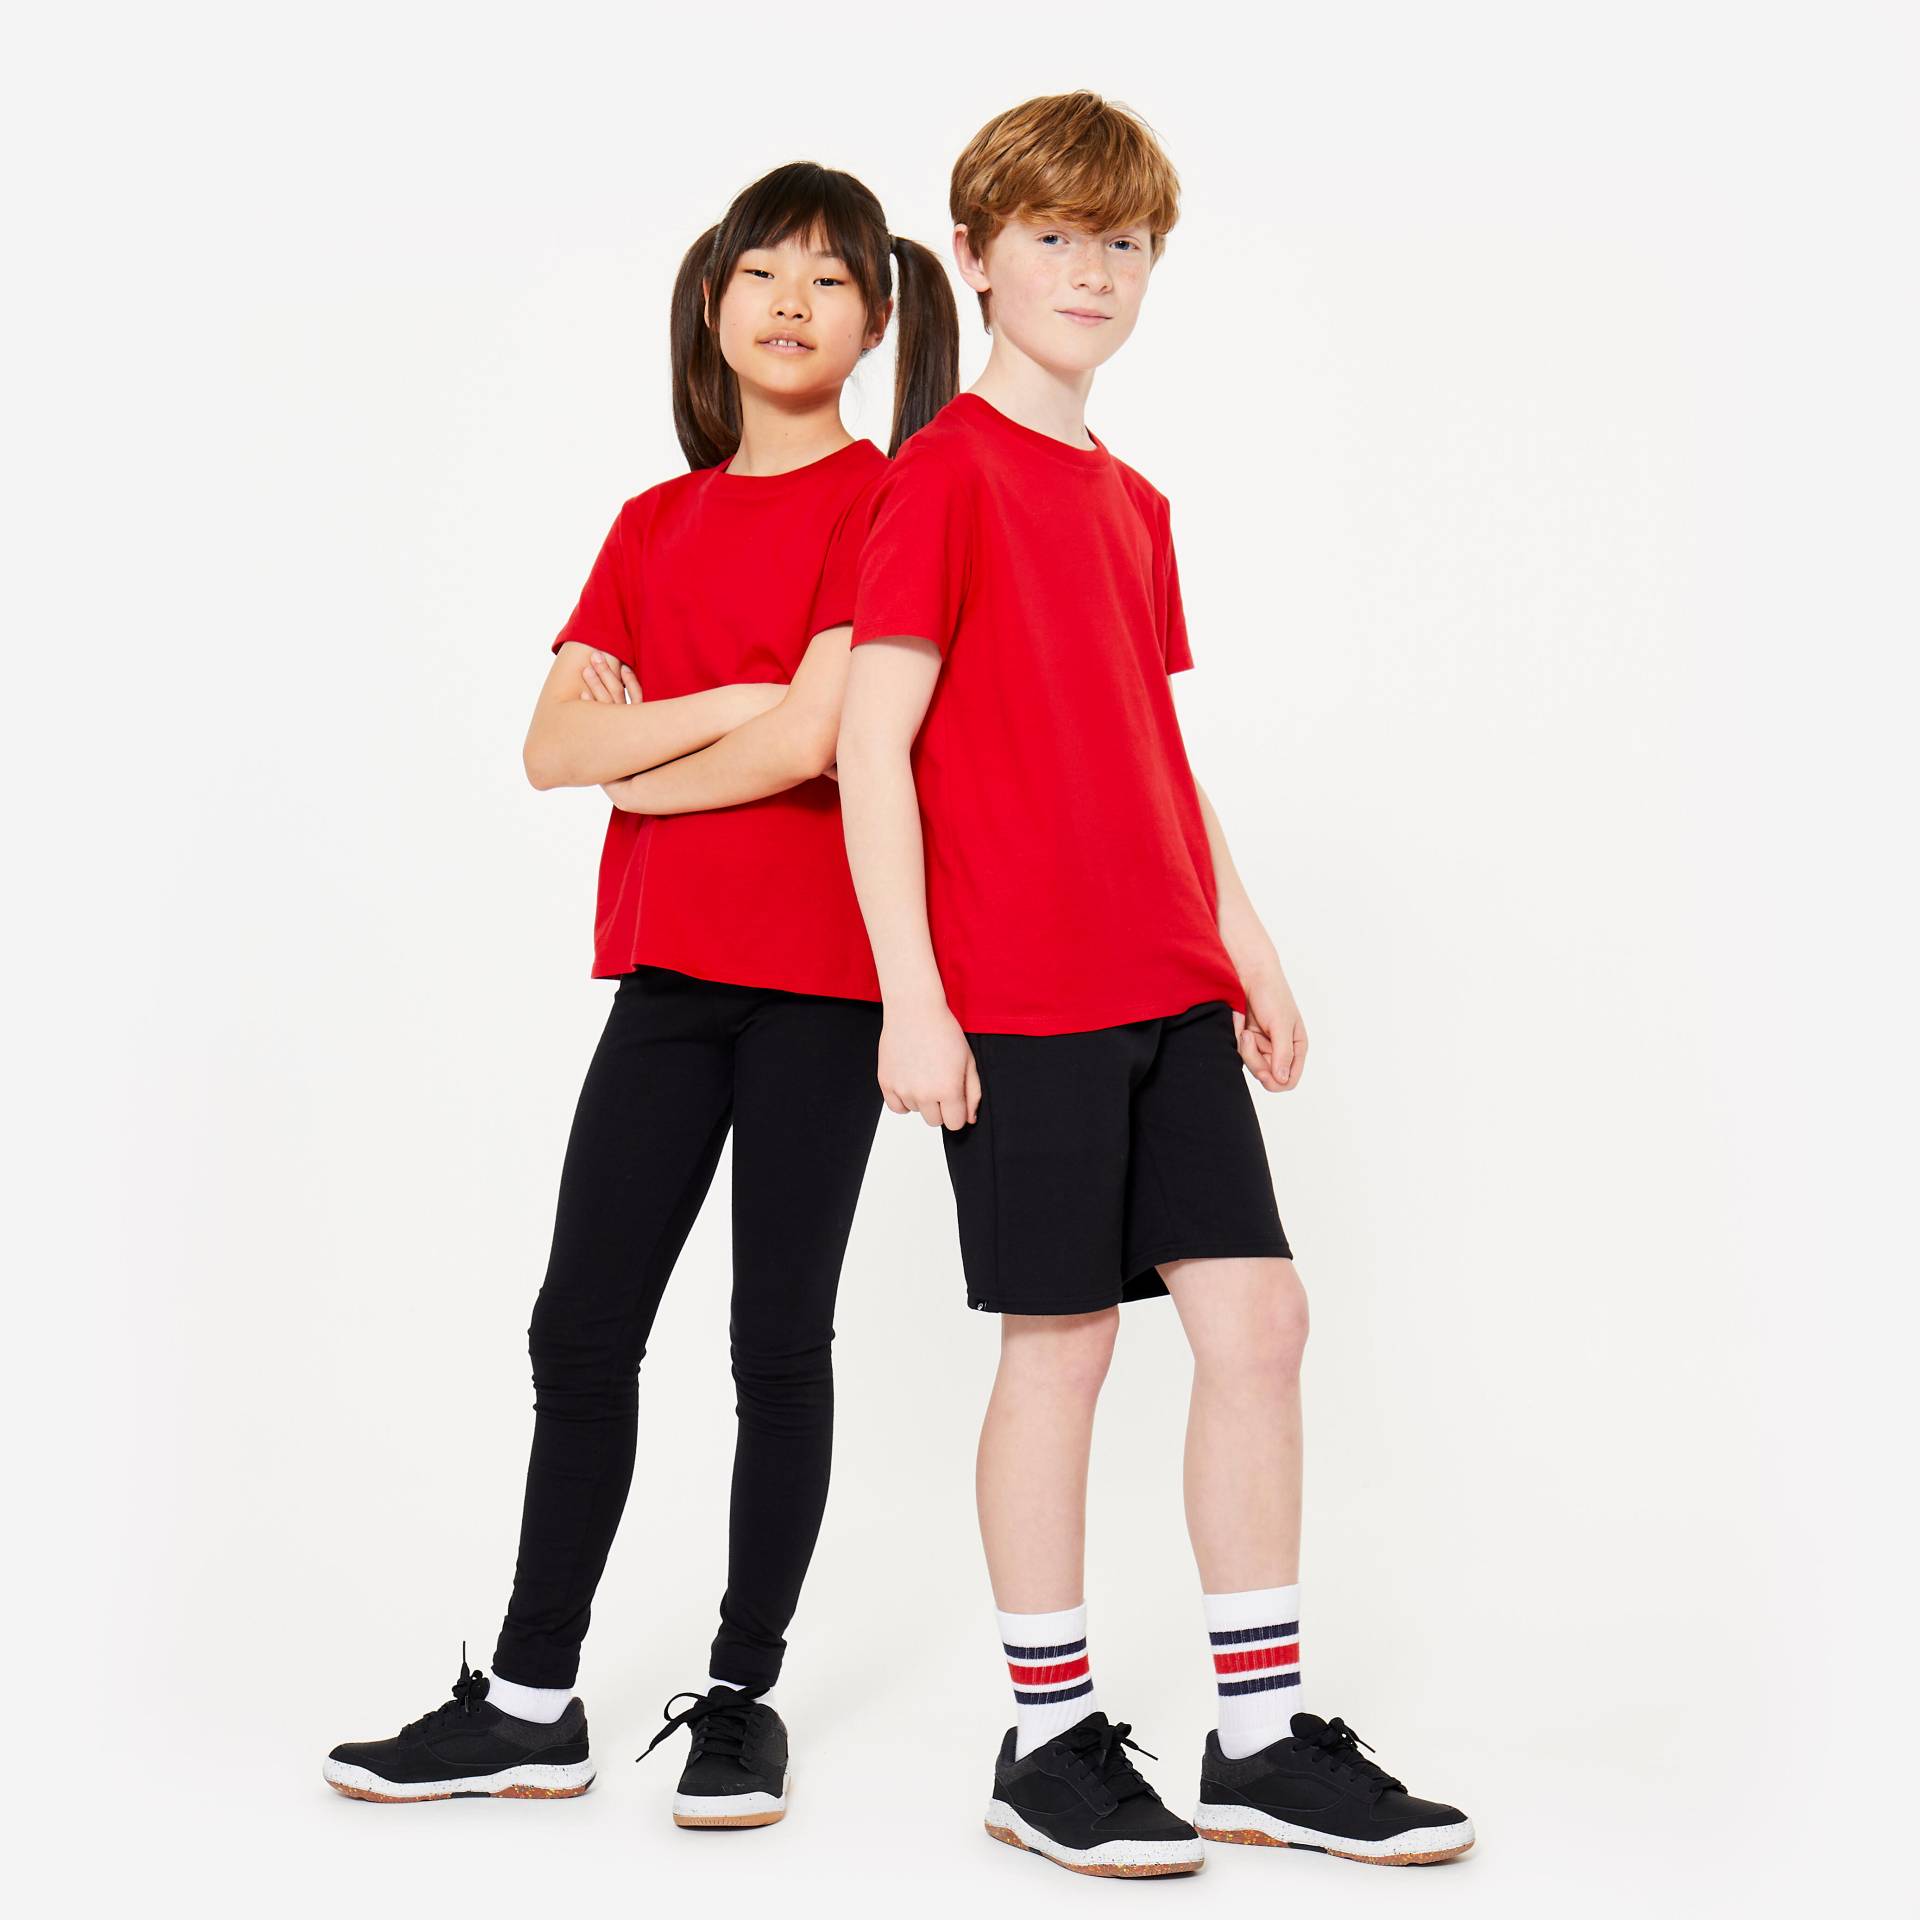 T-Shirt Baumwolle Kinder - rot von Domyos